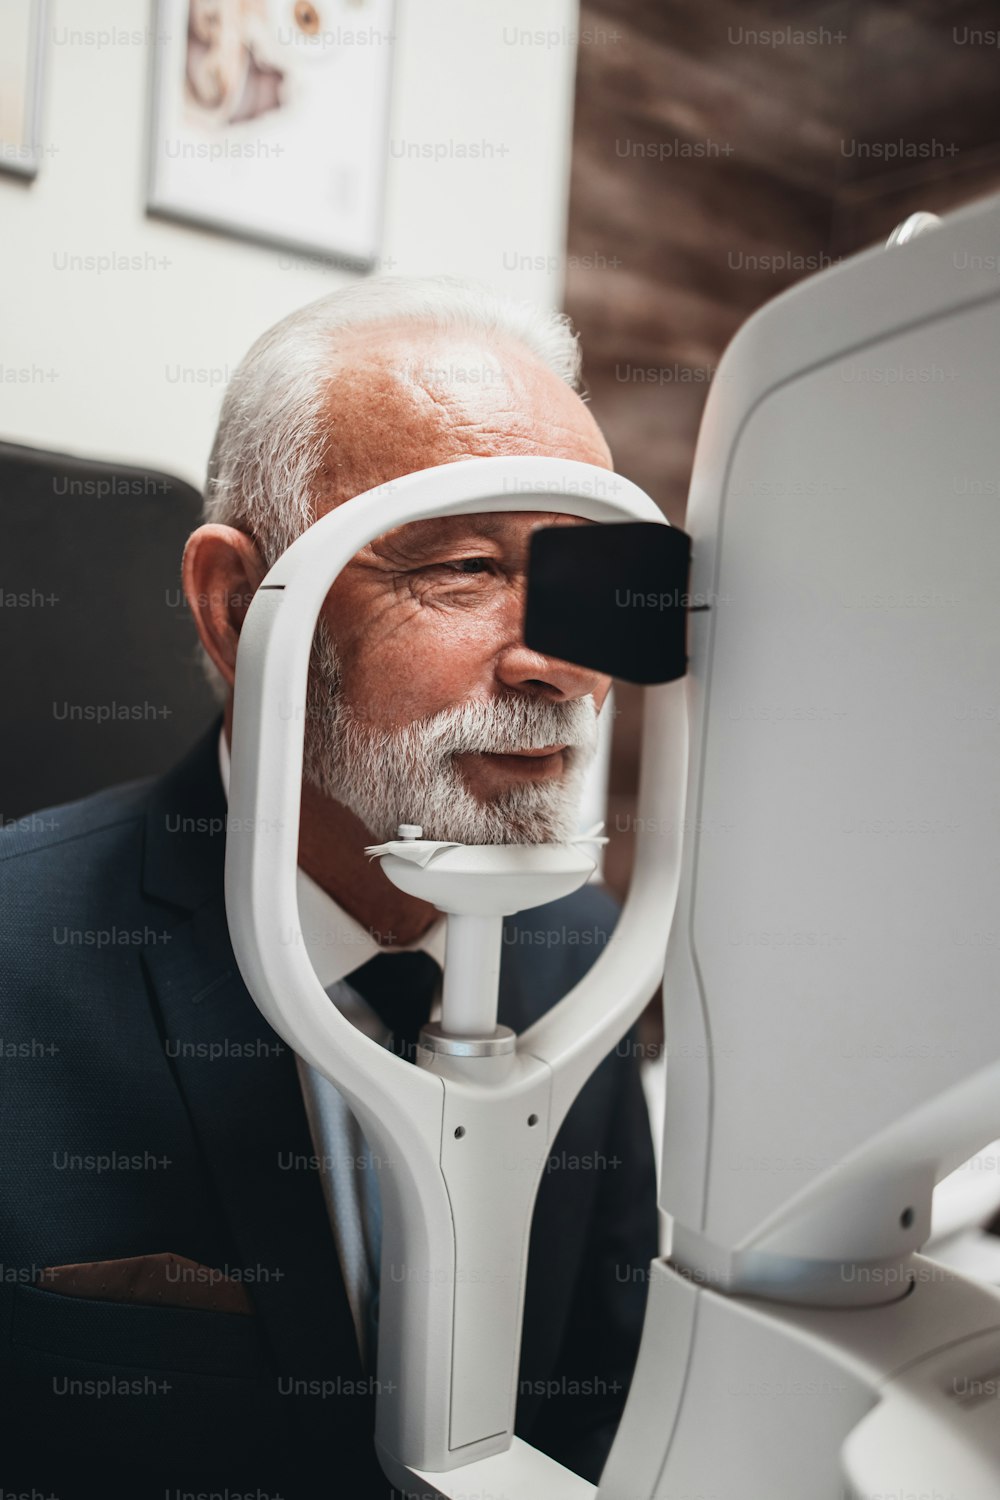 Élégant homme barbu âgé recevant un traitement ophtalmologique. Médecin ophtalmologiste vérifiant sa vue avec un équipement moderne.